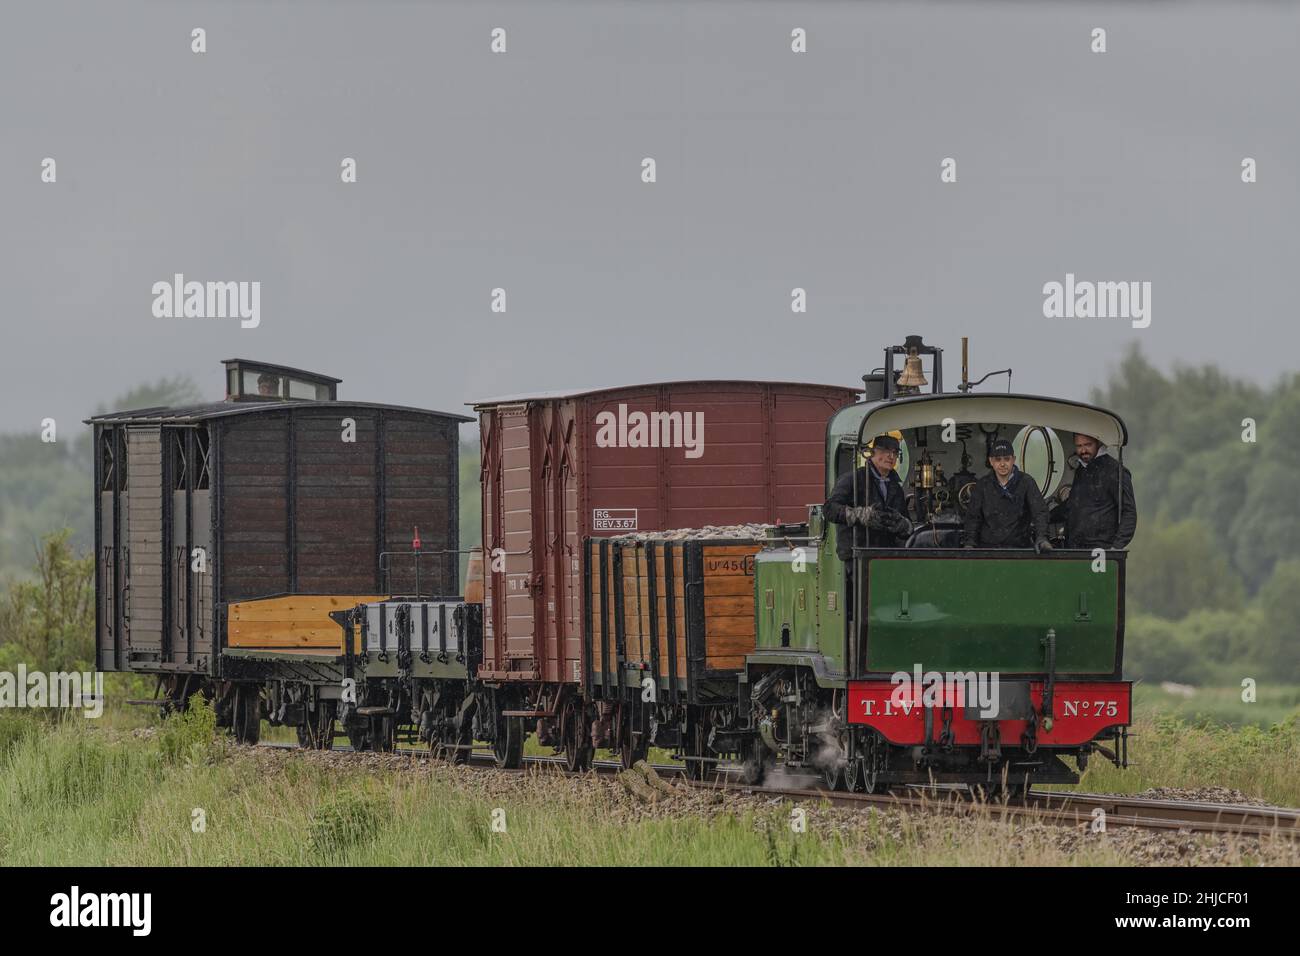 Zug touristique de la Baie de Somme , Chemins de fer économiques Stockfoto